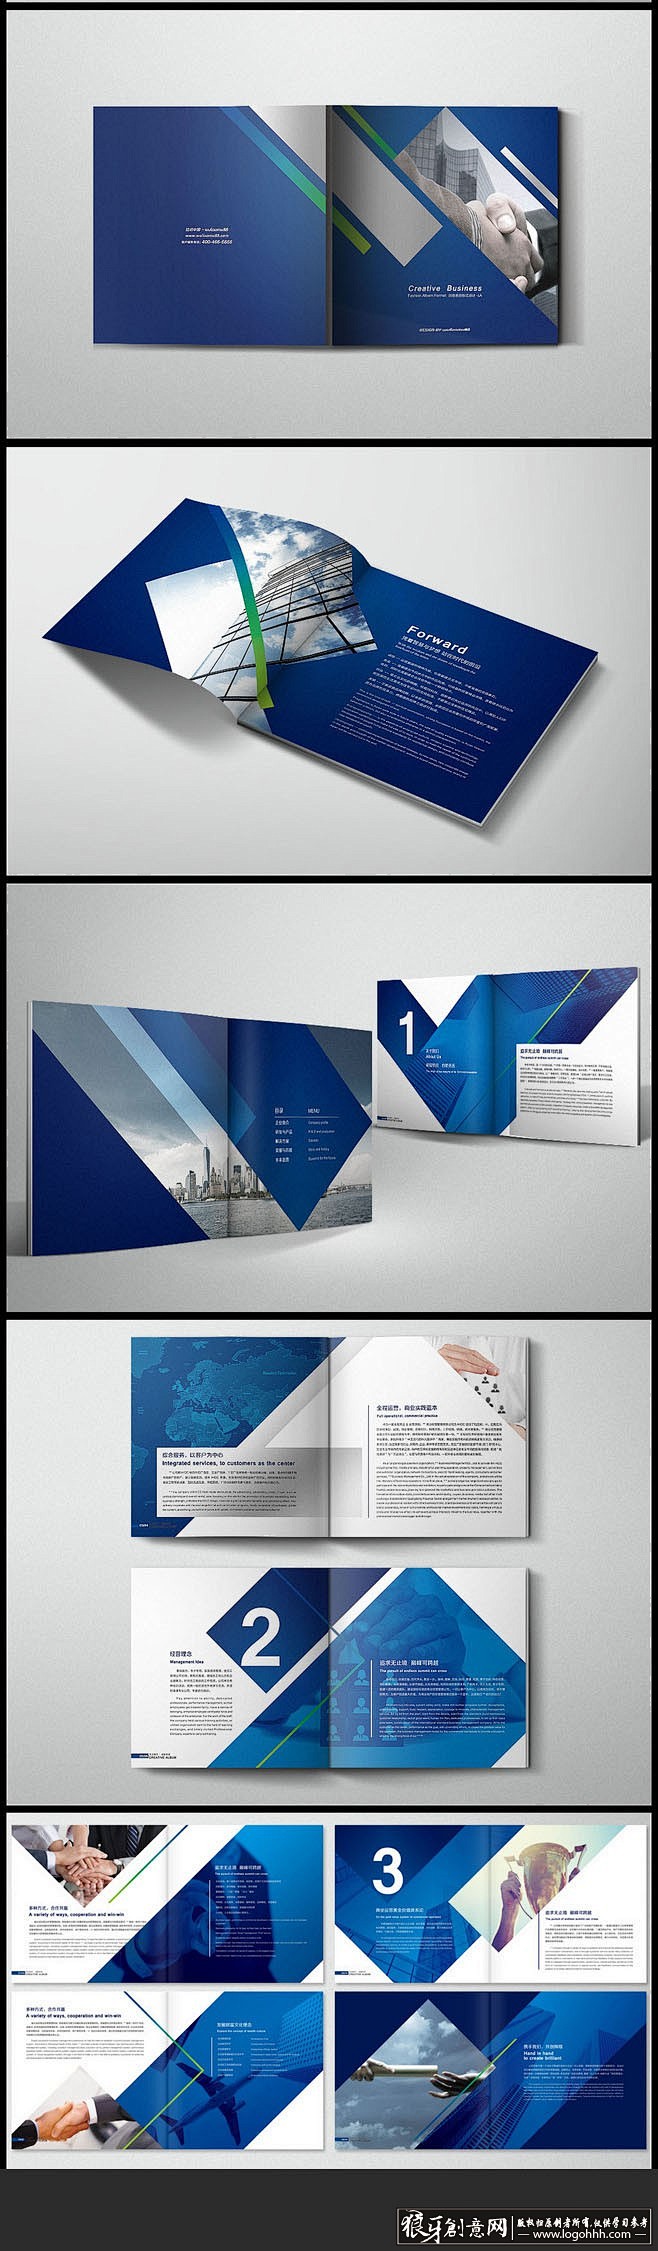 创意画册 画册版式设计 蓝色画册封面设计...